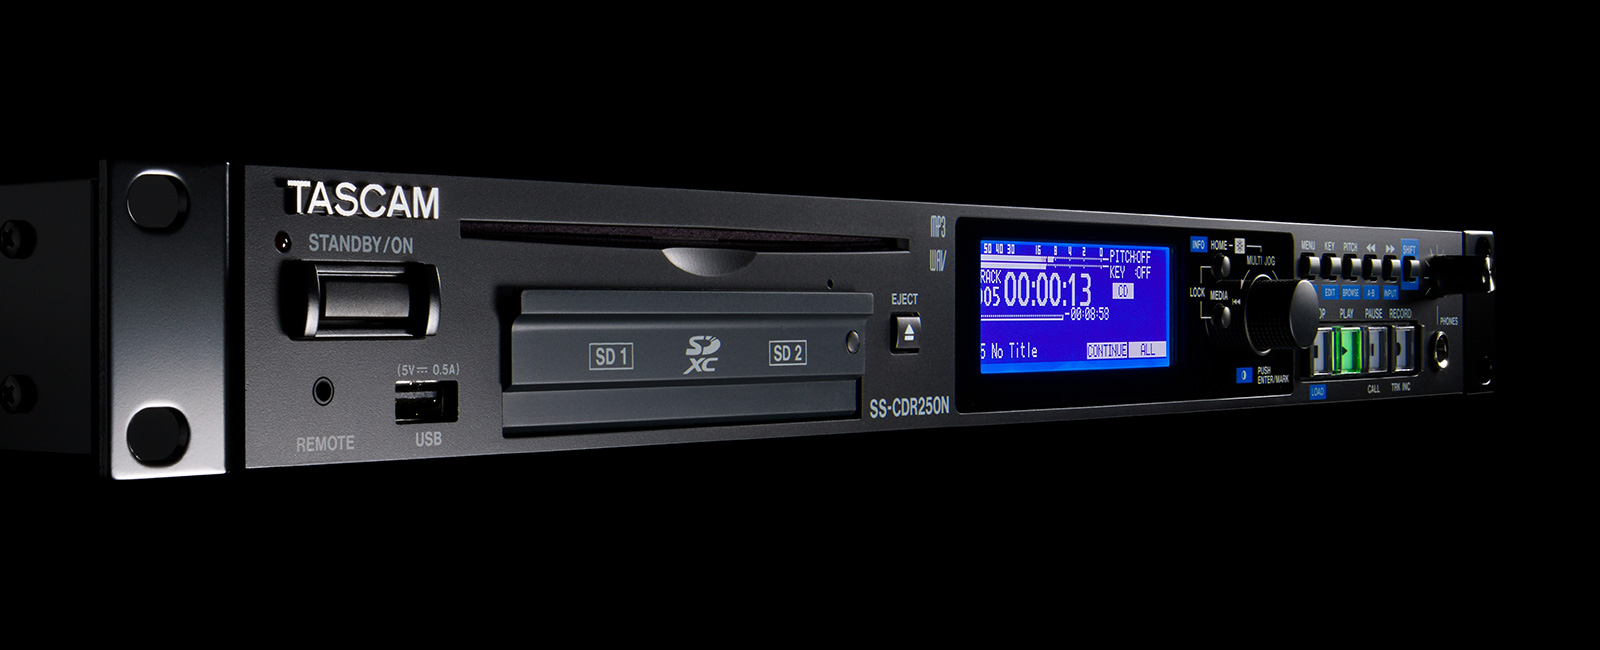 SS-CDR250N』および『SS-R250N』の最新ファームウェアV1.39をリリース ...